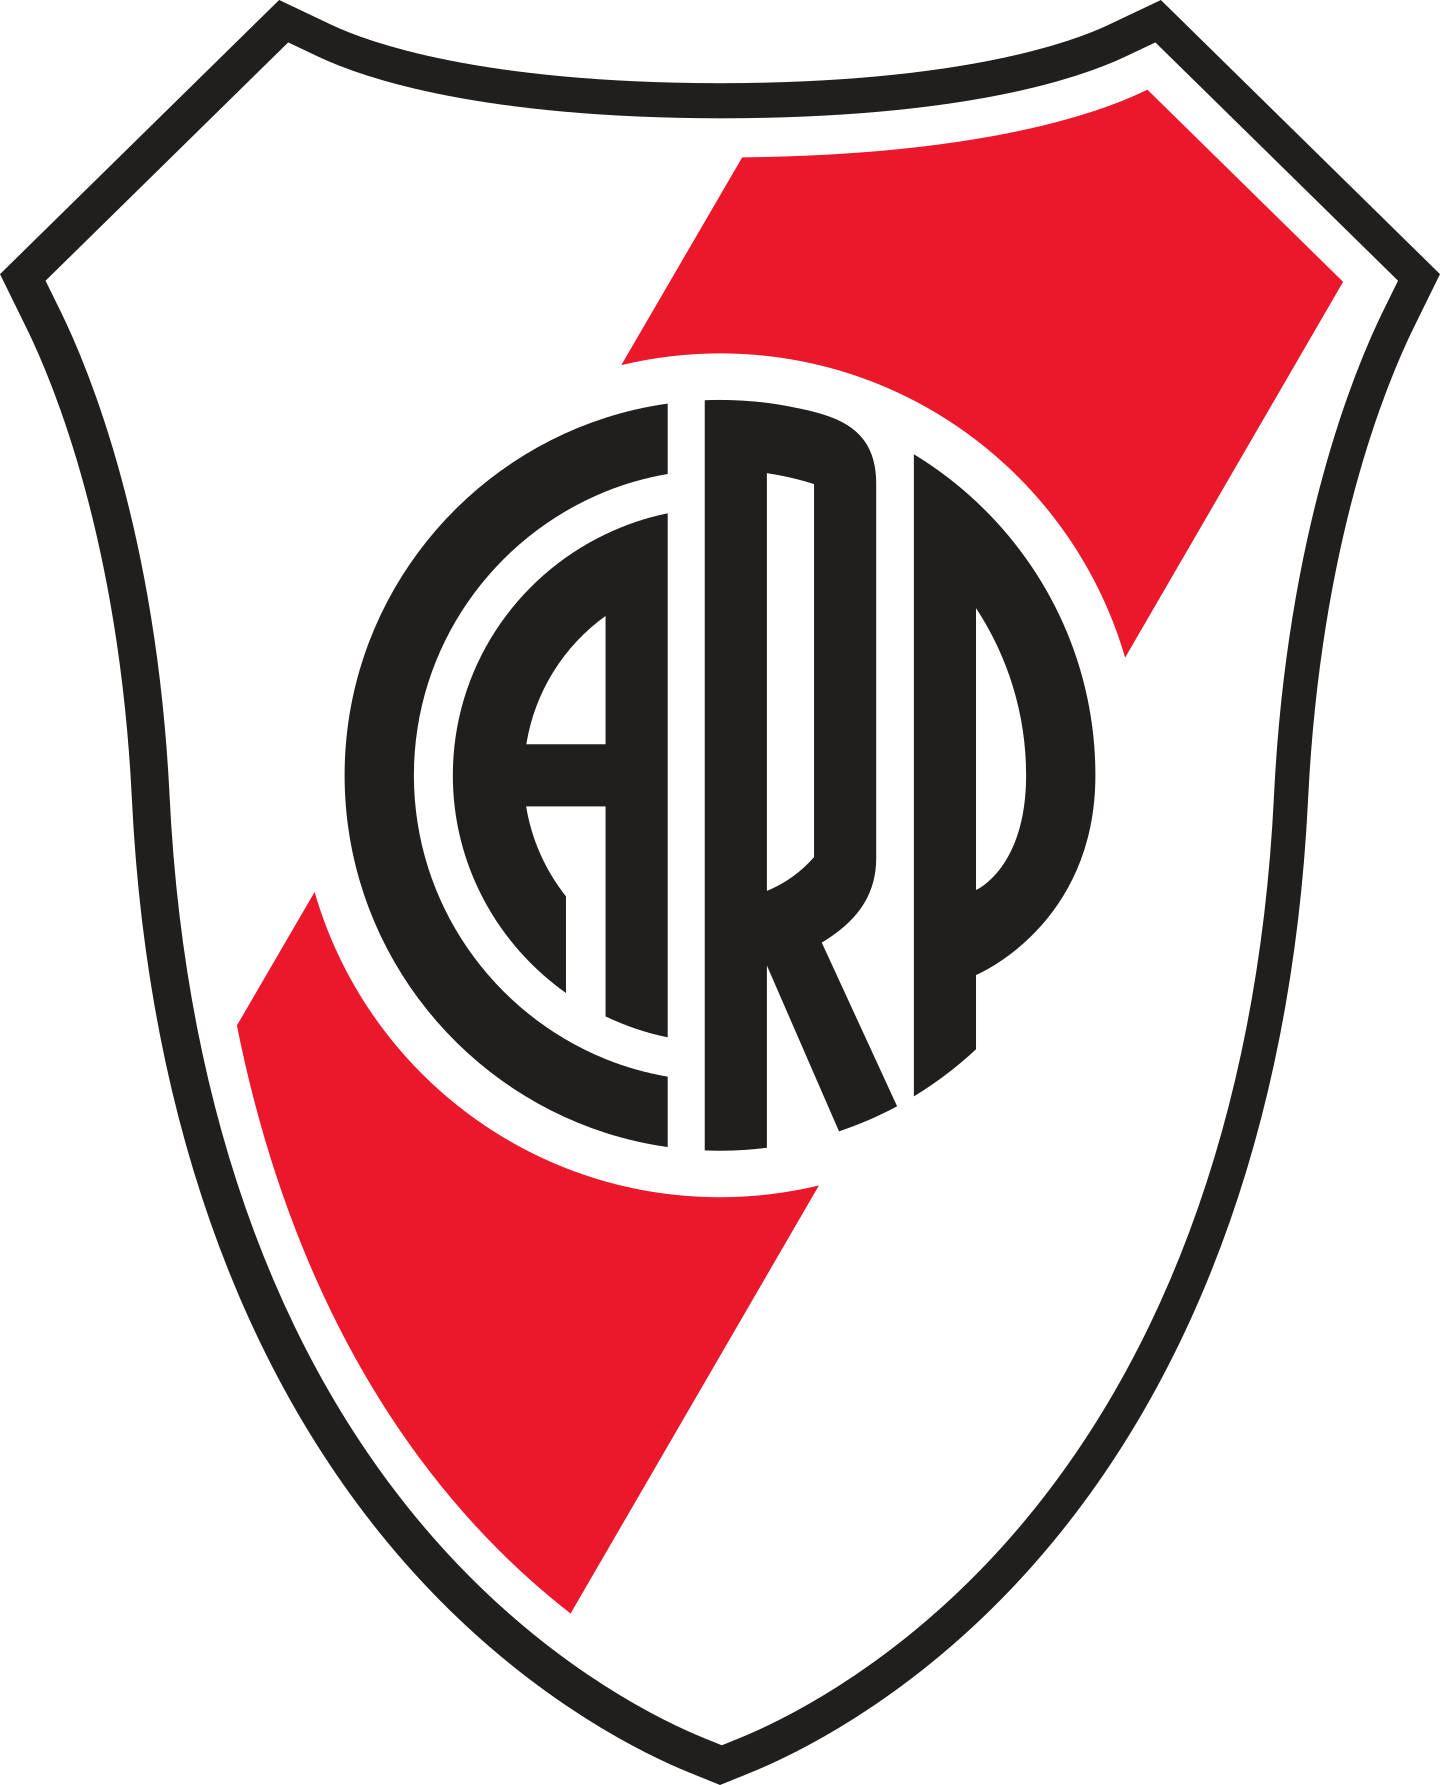 river plate logo 2 2 - River Plate Logo - Club Atlético River Plate Escudo